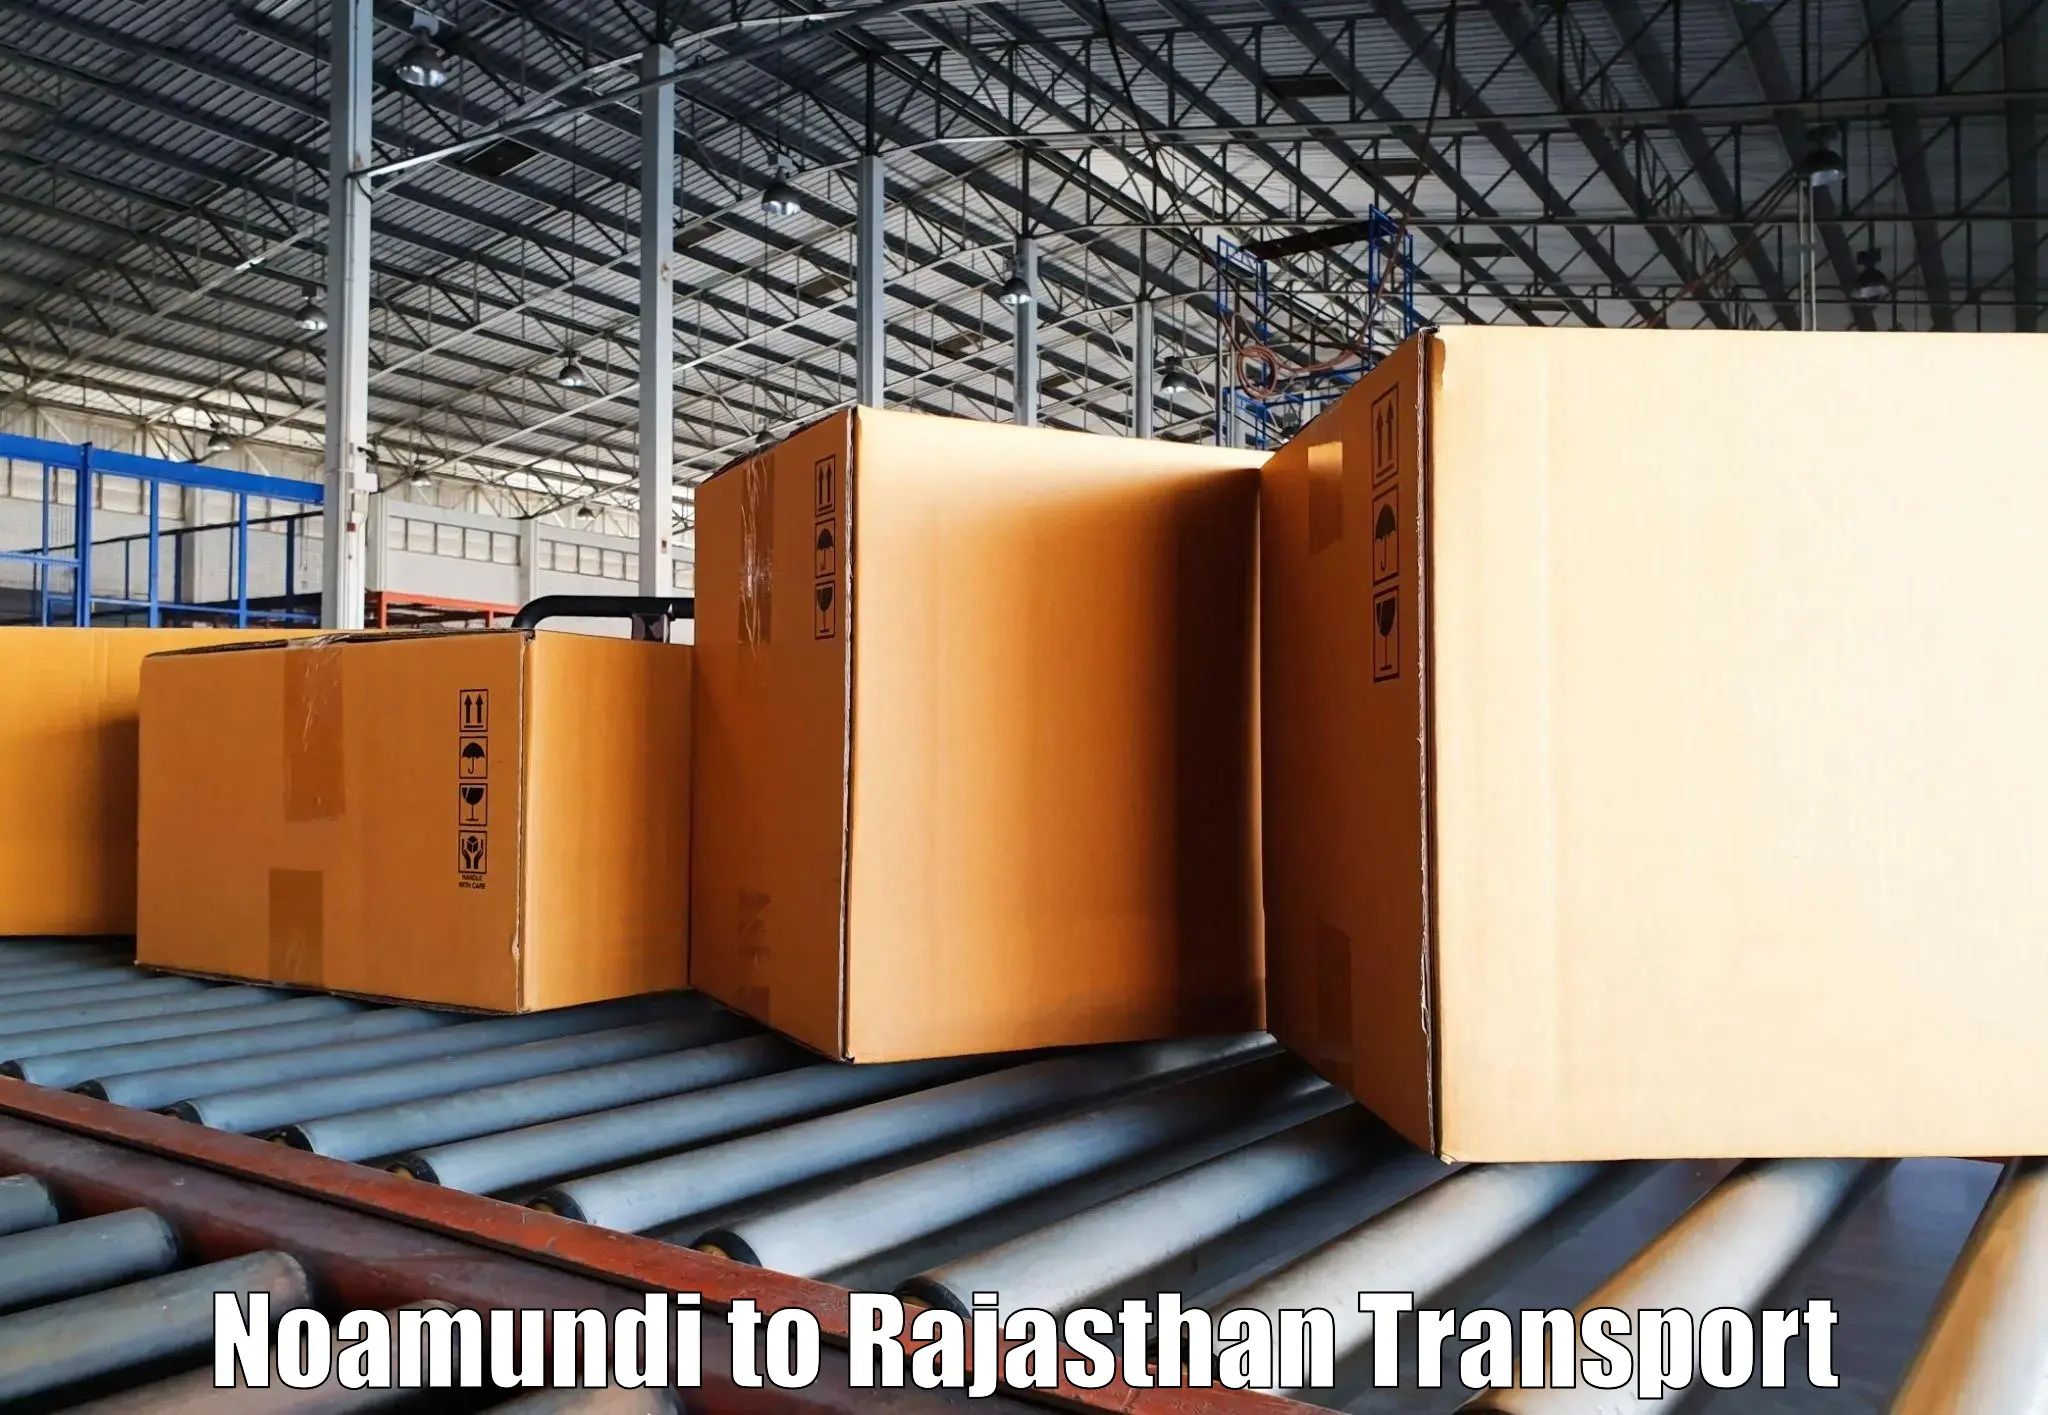 Express transport services Noamundi to Rajasthan